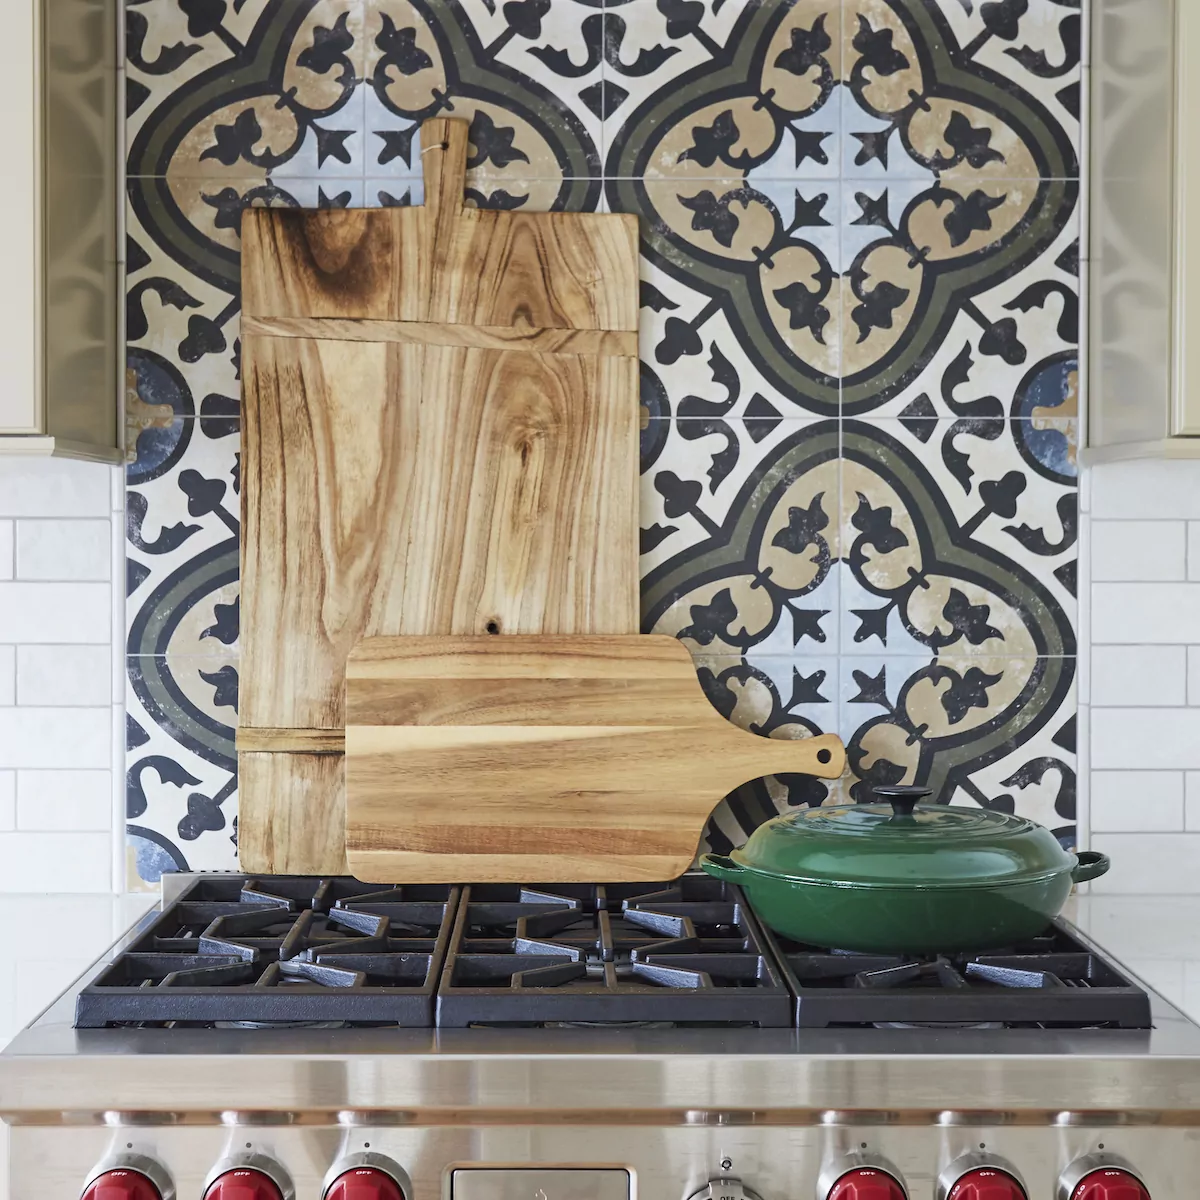 kitchen-range-tile-backsplash-wooden-cutting-boards